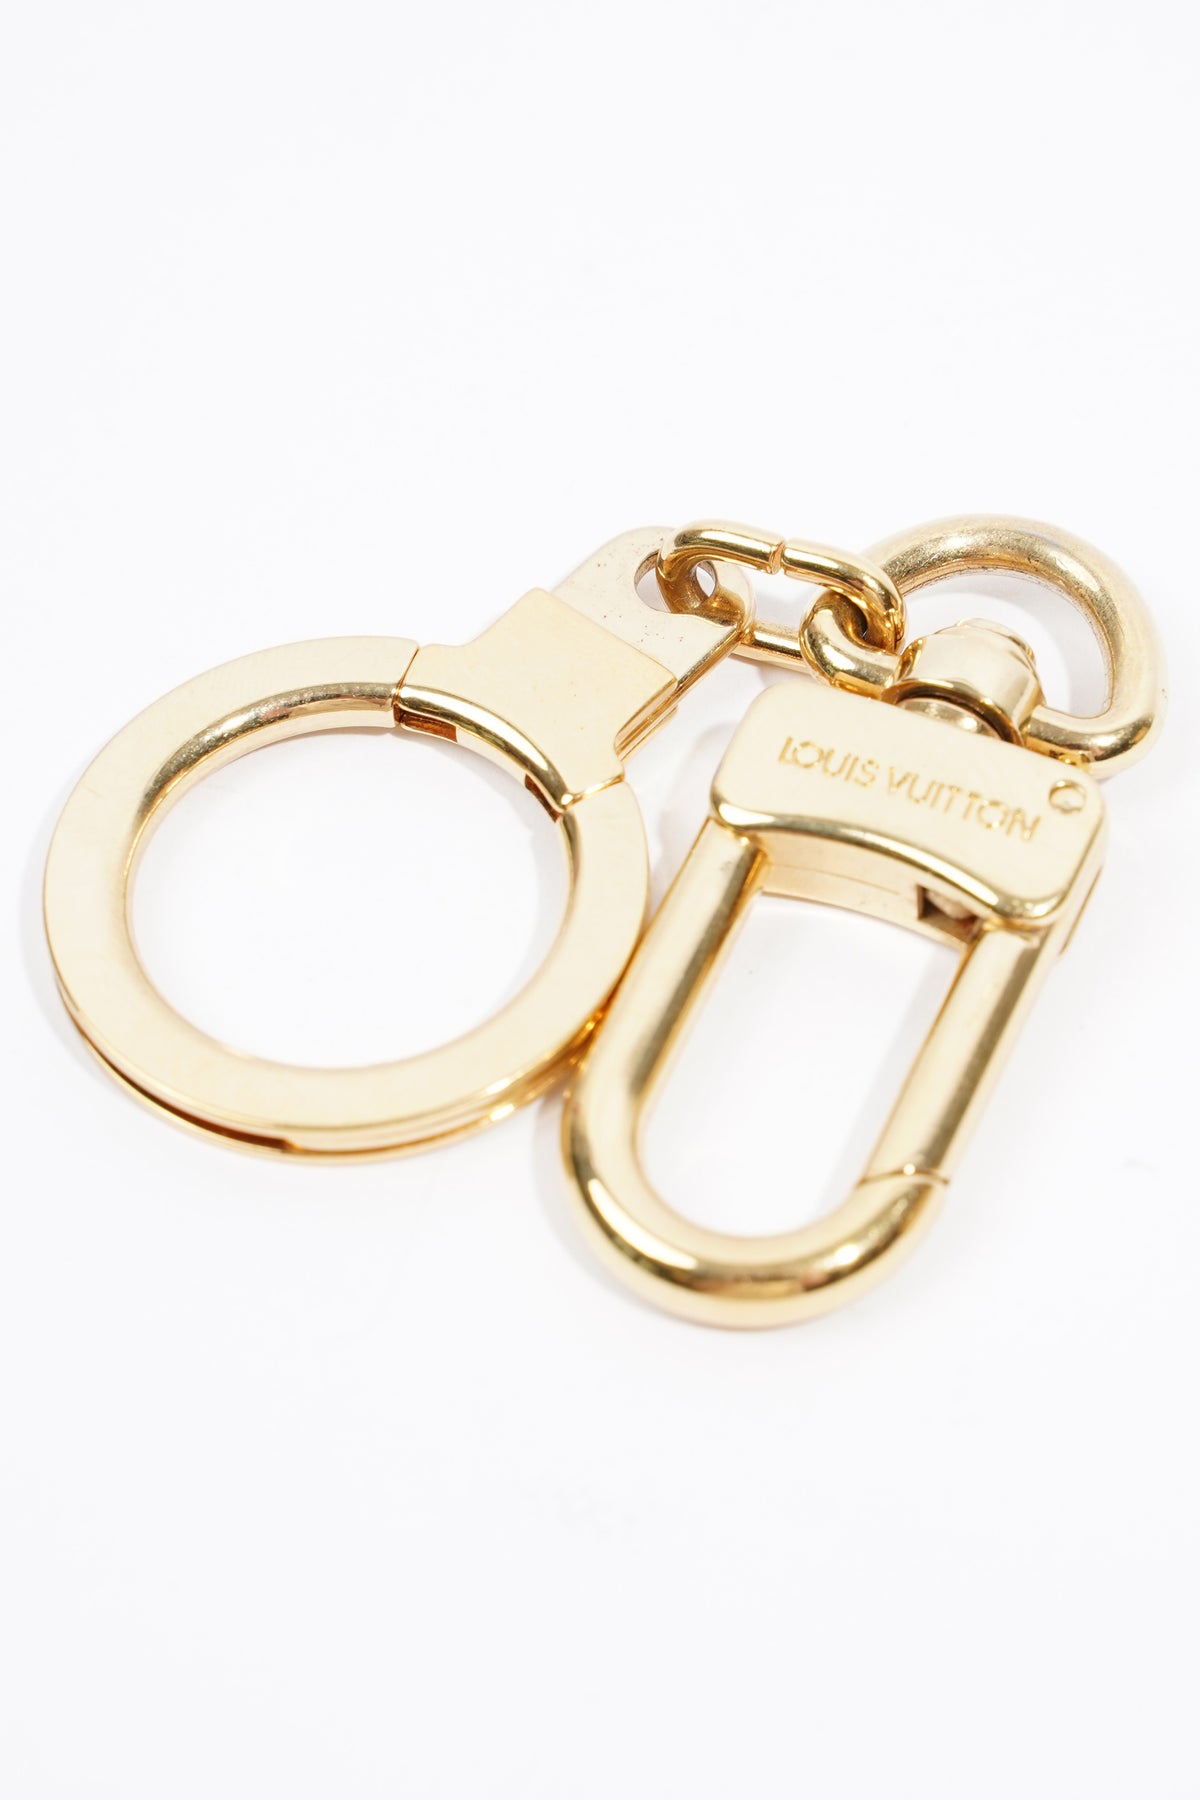 Louis Vuitton Key Chain Pochette Strap Extender in Golden Brass - SOLD